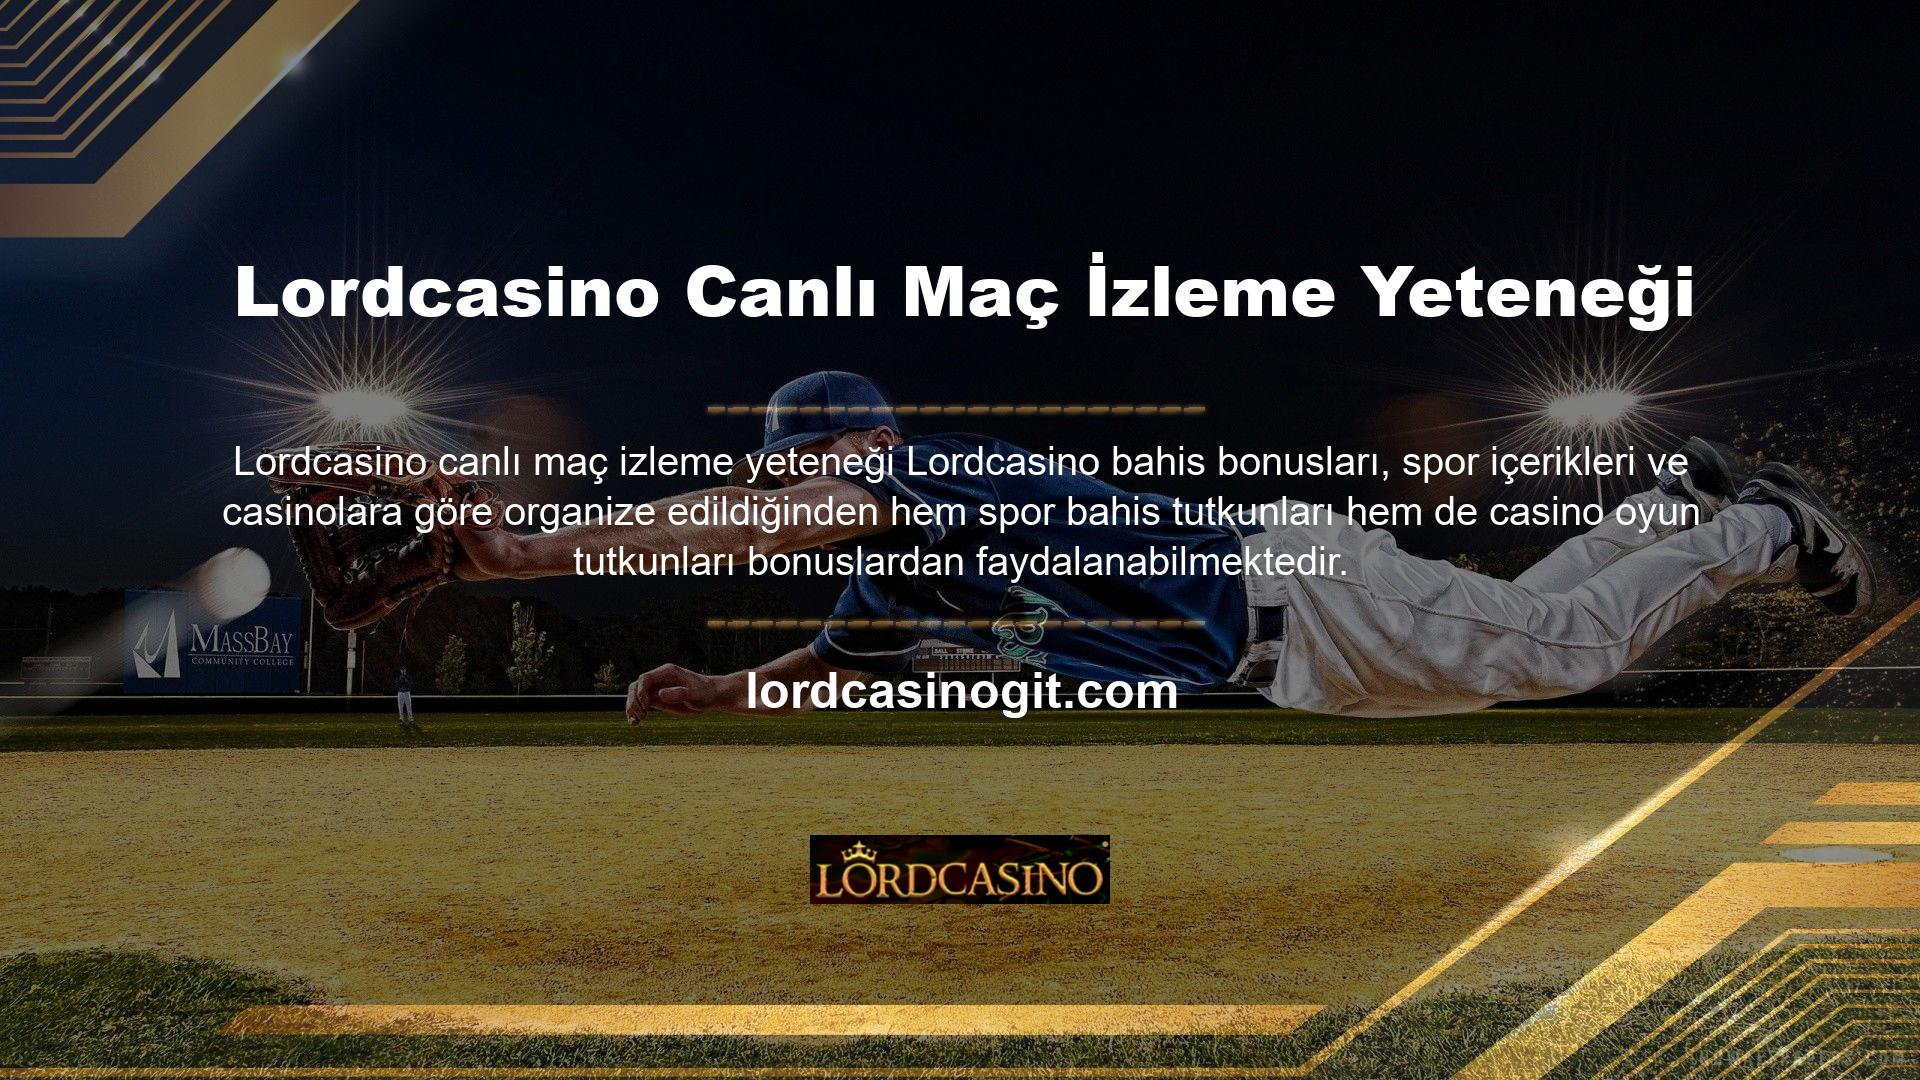 Canlı bahis ve casino oyun sitesi Lordcasino, müşterilerine sunduğu benzersiz hizmetler ve casino tutkunları nezdindeki güçlü konumu nedeniyle casino sitesi sektörünün en popüler sitelerinden biridir